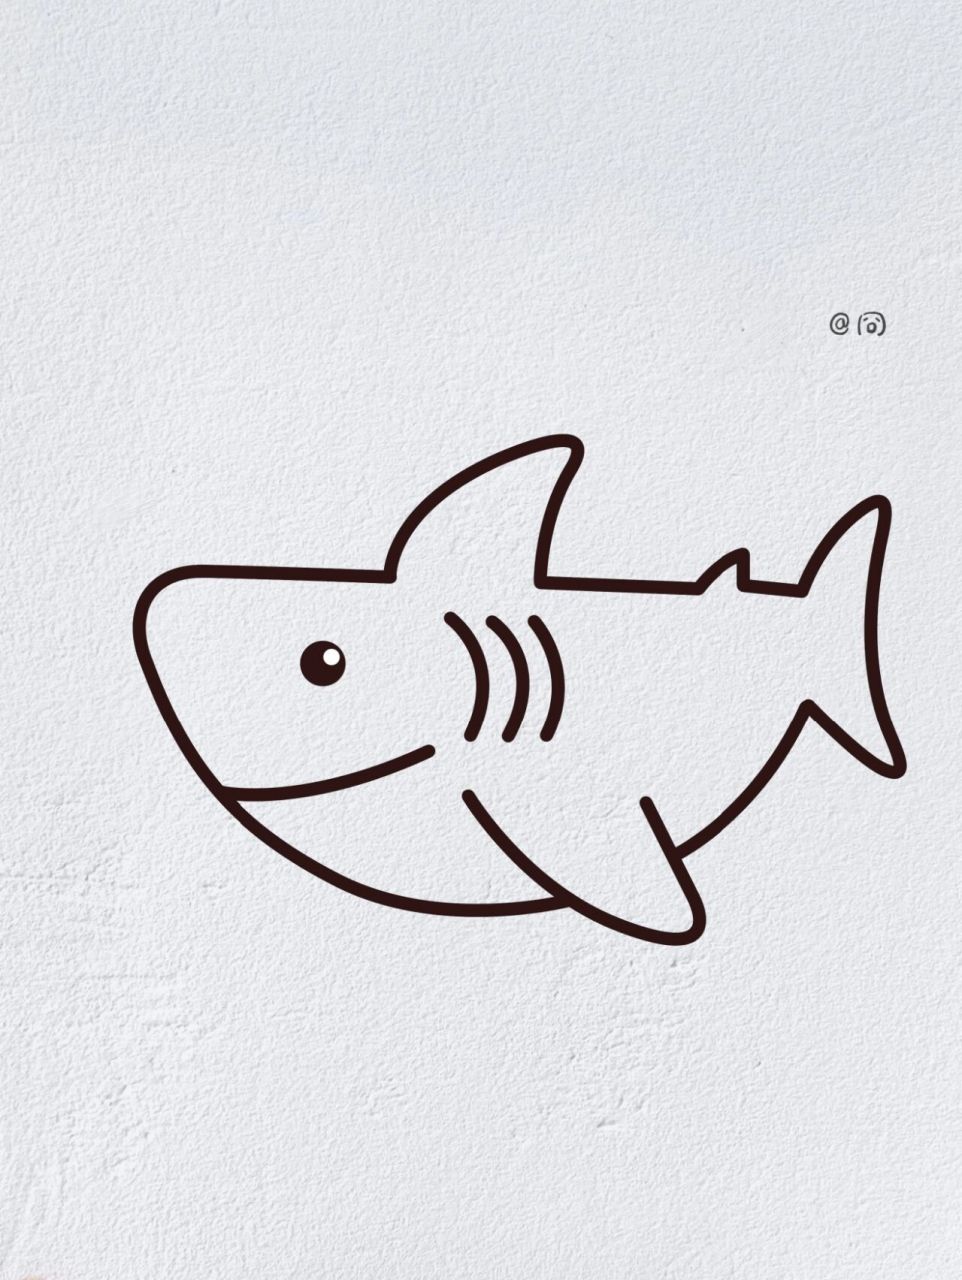 鲨鱼简笔画凶狠步骤图片